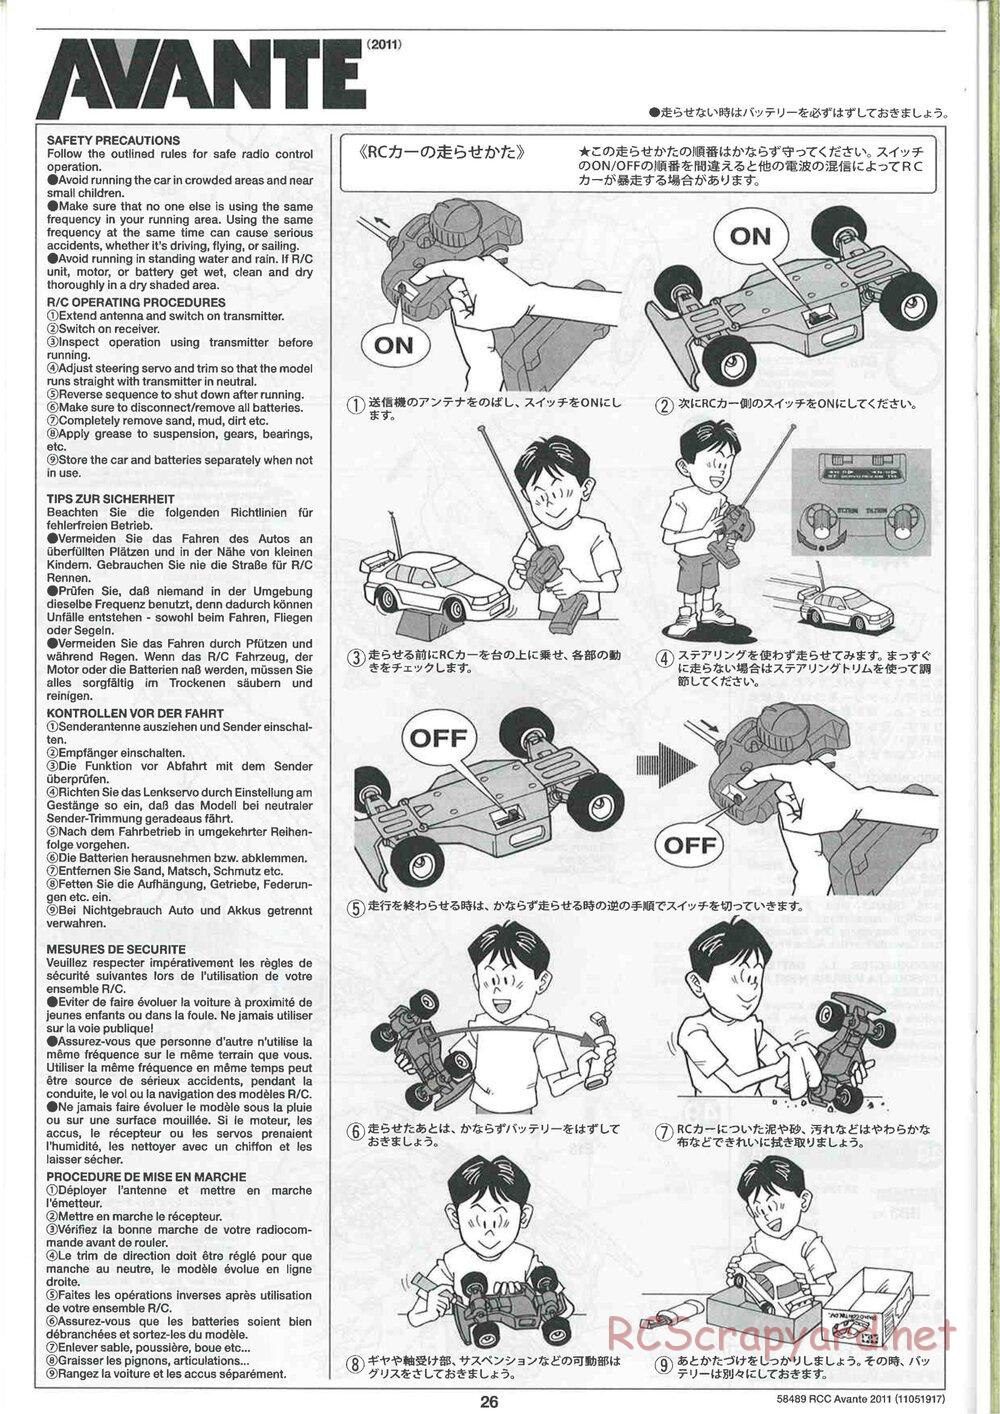 Tamiya - Avante 2011 - AV Chassis - Manual - Page 26